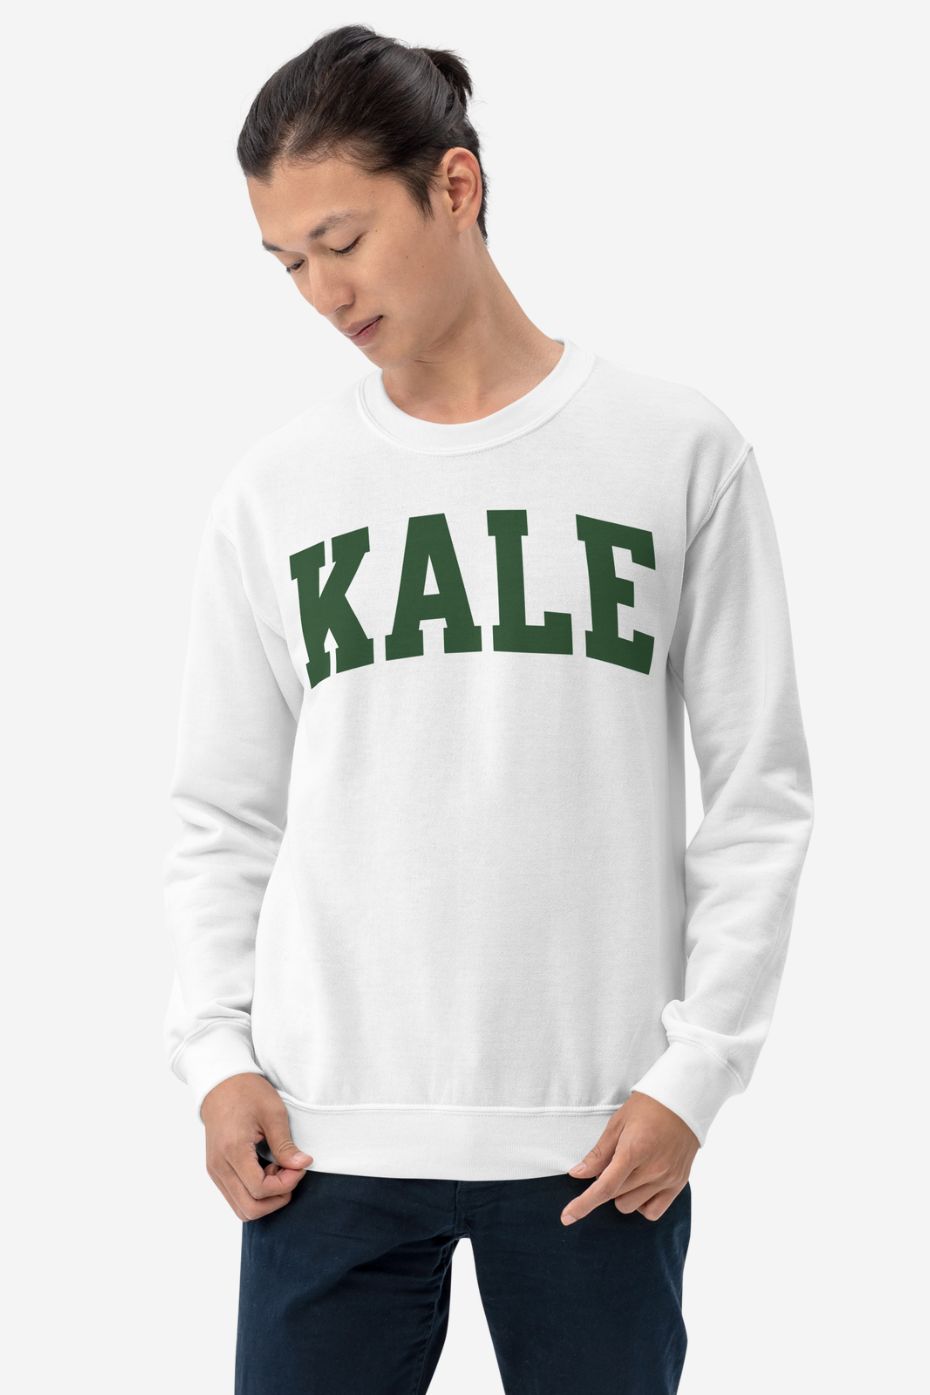 Kale - Unisex Sweatshirt